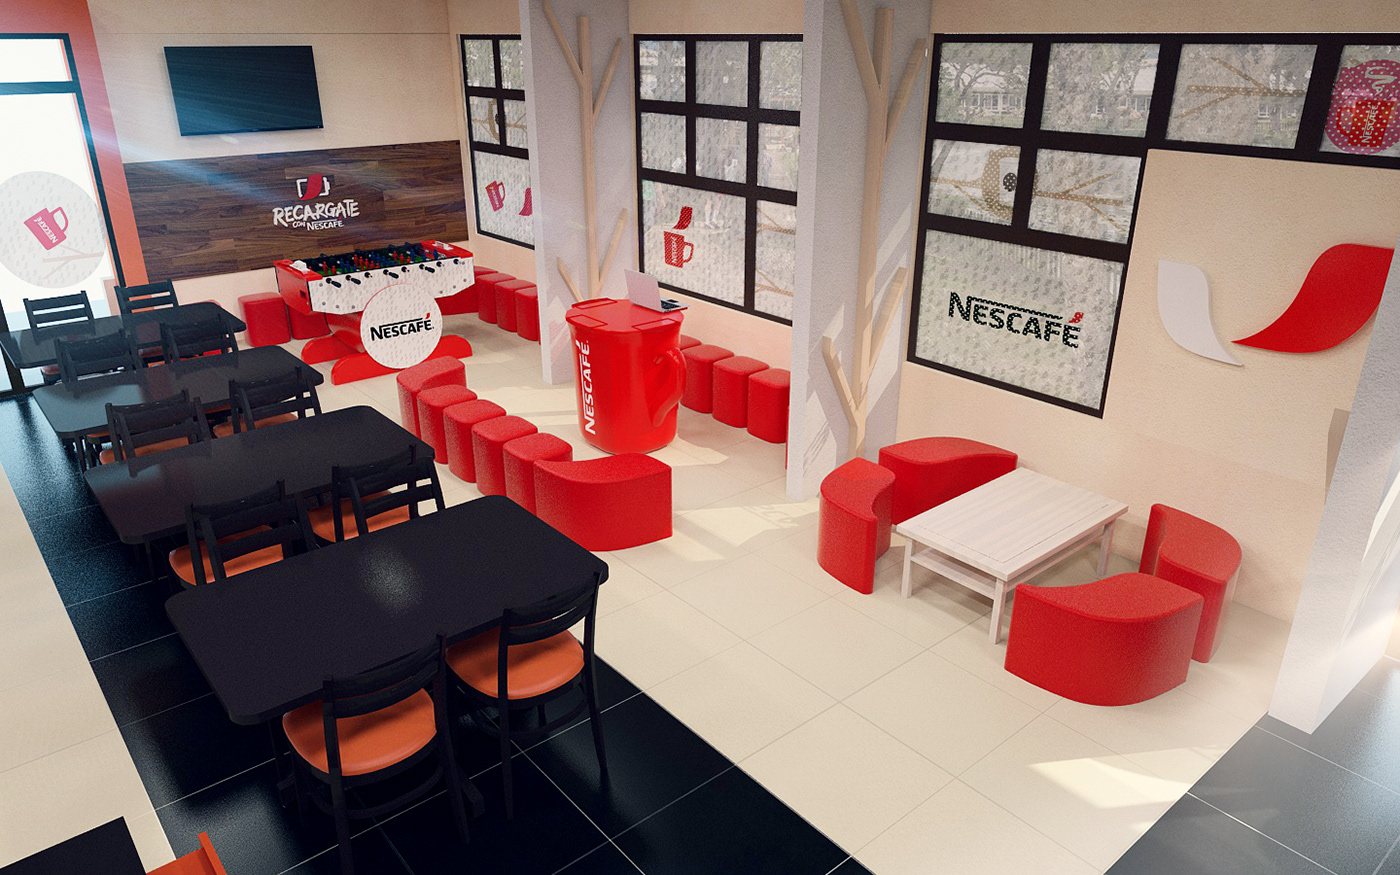 coffe nescafe ambientacion diseño Interior arquitectura Cinema cafe